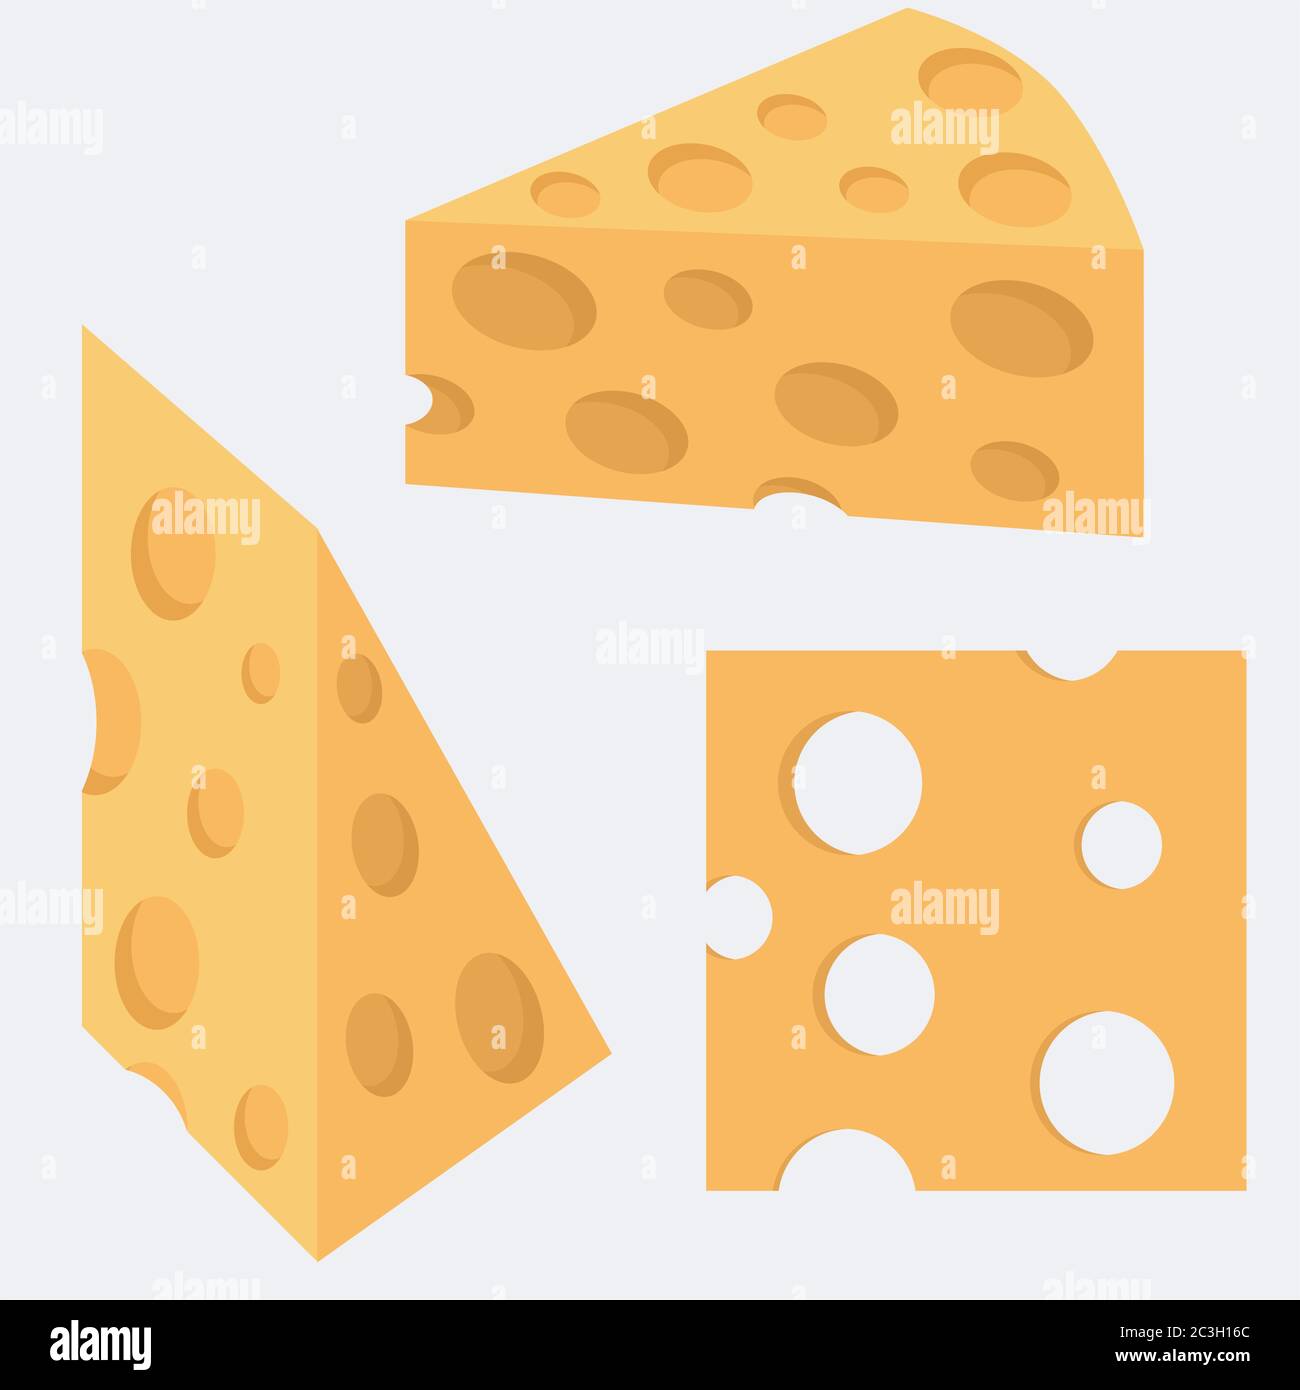 Käse. Vektor-Illustration von Lebensmitteln, Stücke von Käse. Set aus drei Elementen, Stücken, Objekten. Stock Vektor